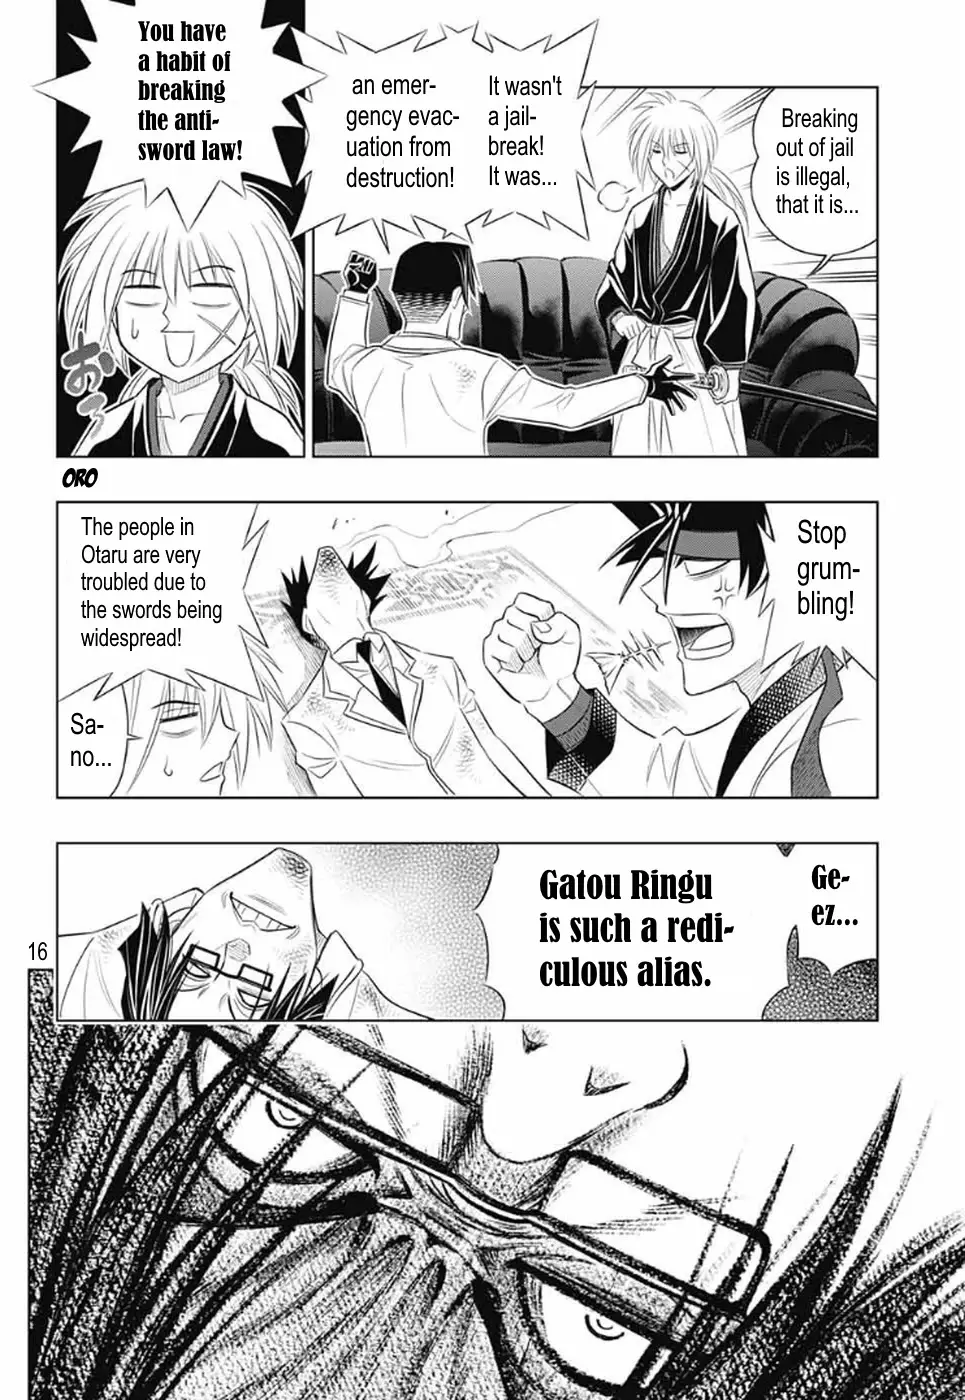 Rurouni Kenshin: Hokkaido Arc - 25 page 16